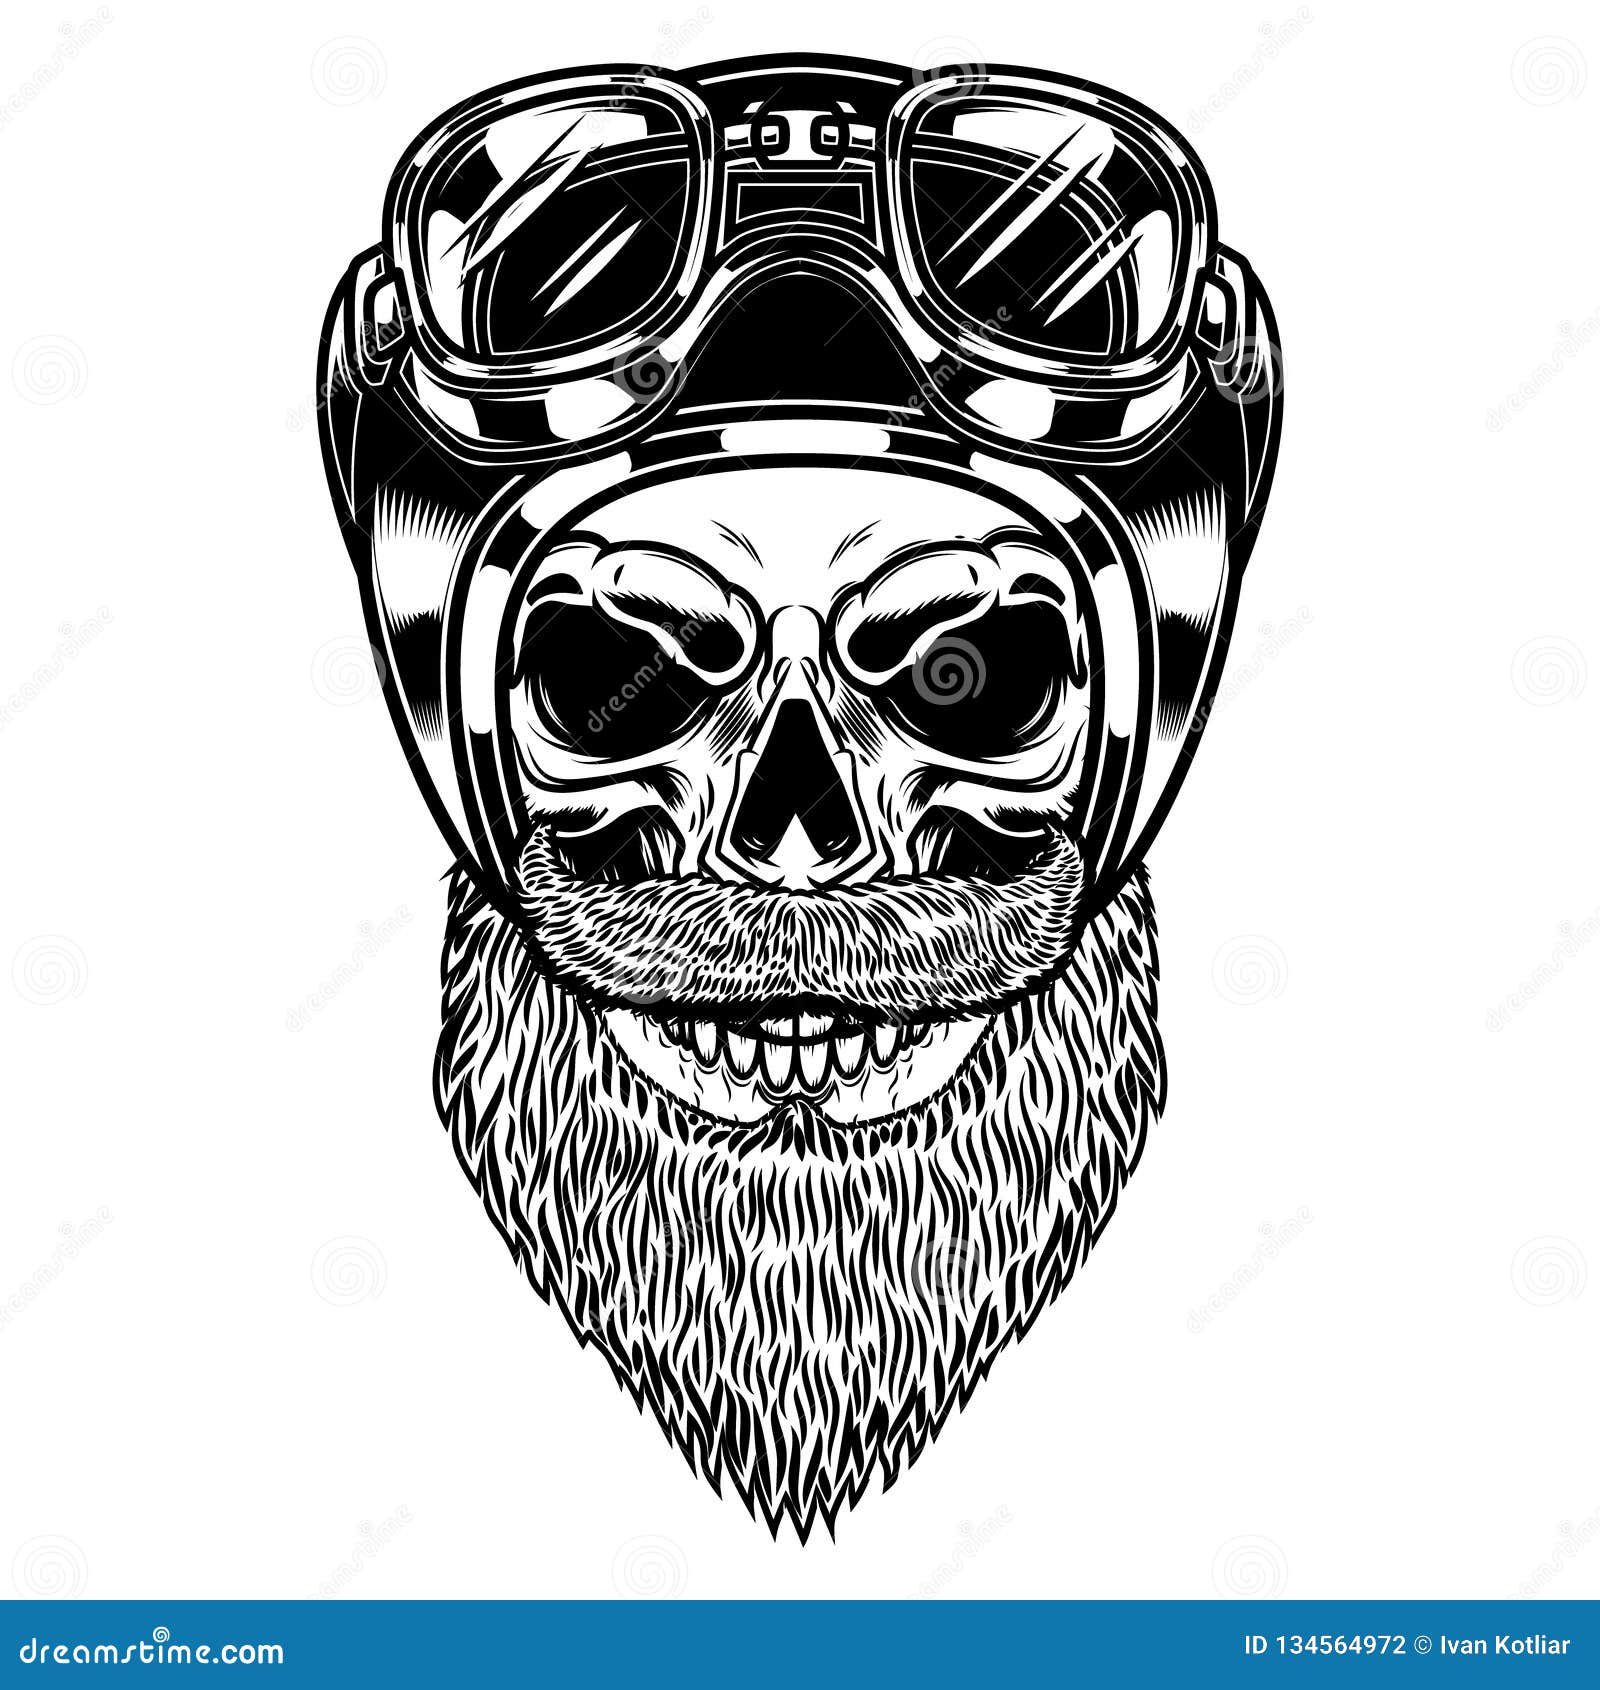 Biker Skull In Racer Helmet In Engraving Style. Design Element For Logo